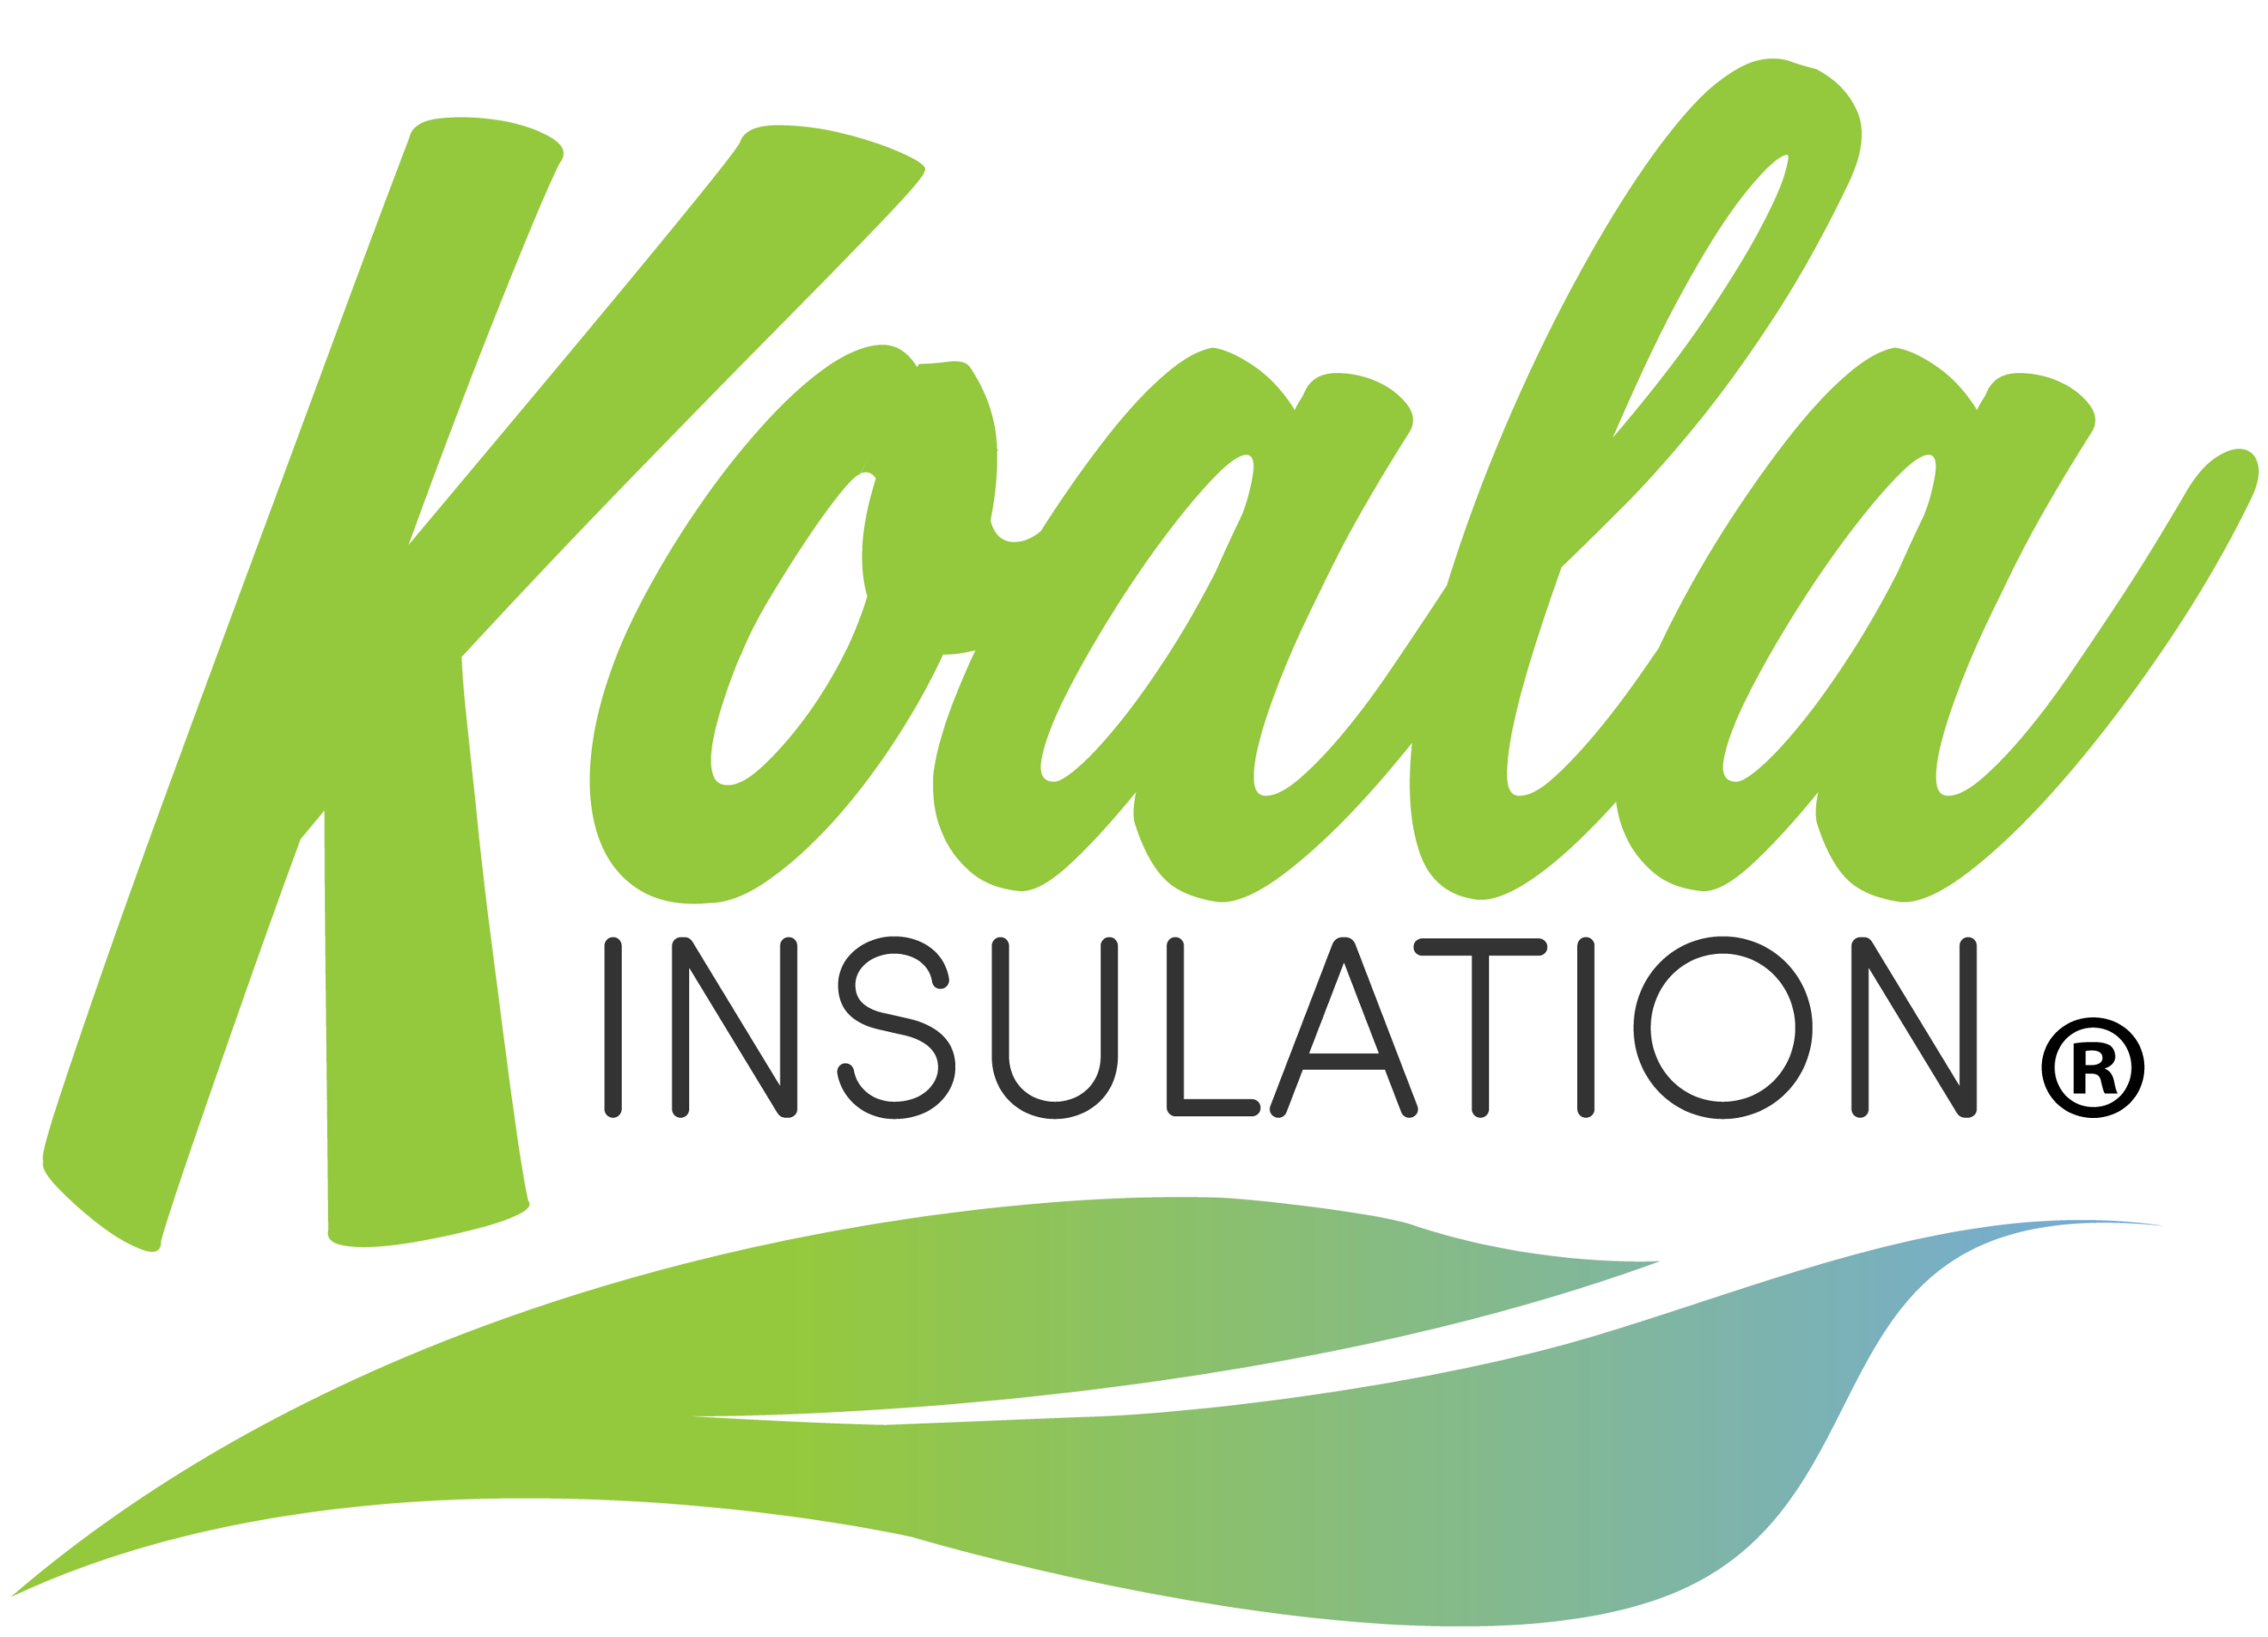 Koala Insulation Franchise Logo